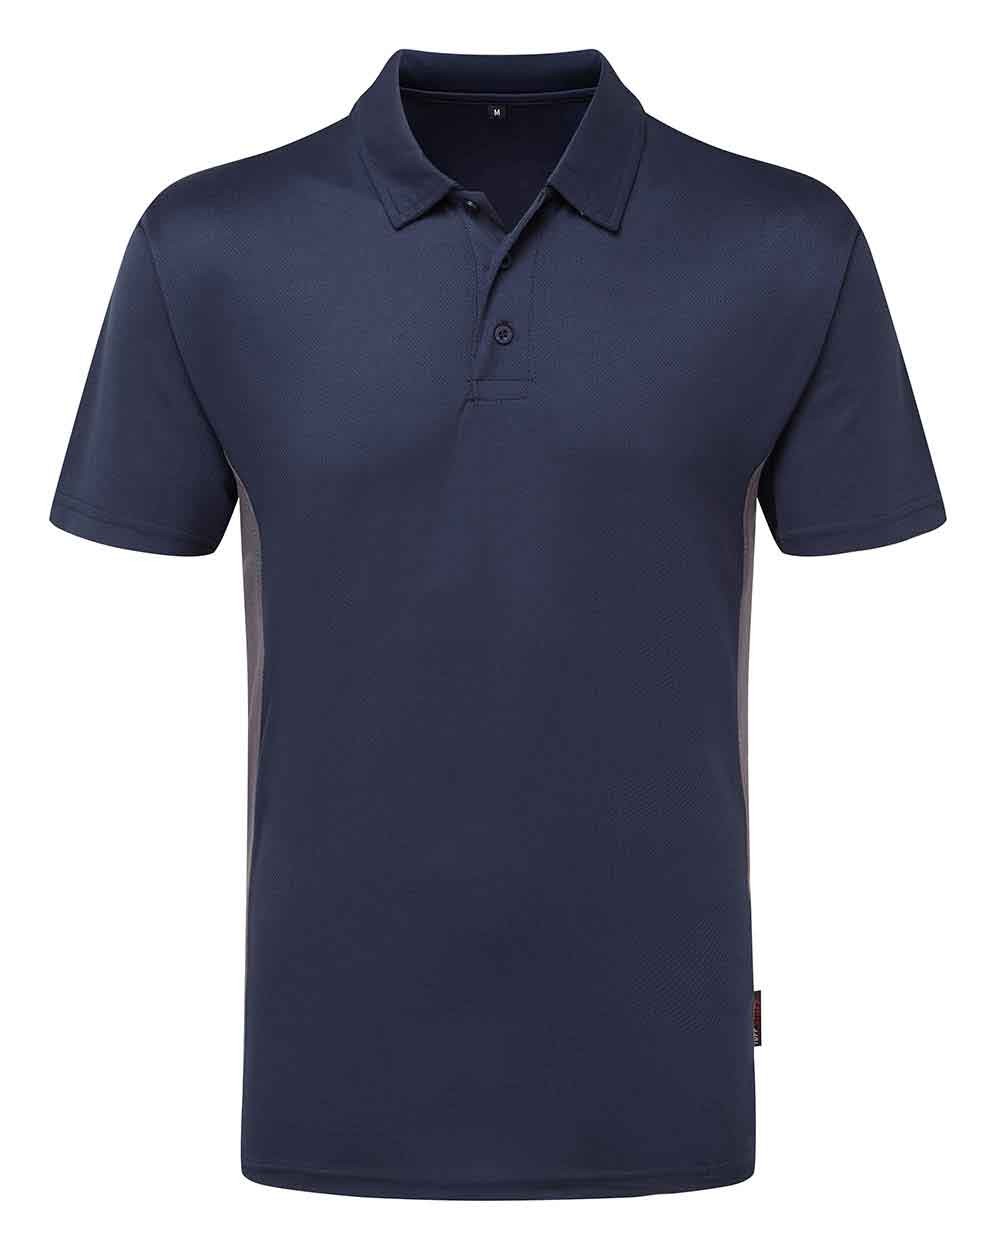 Tuffstuff 131 Elite Polo Shirt - Workwear Polo Shirts & Tees - Workwear  Tops - Workwear - Best Workwear